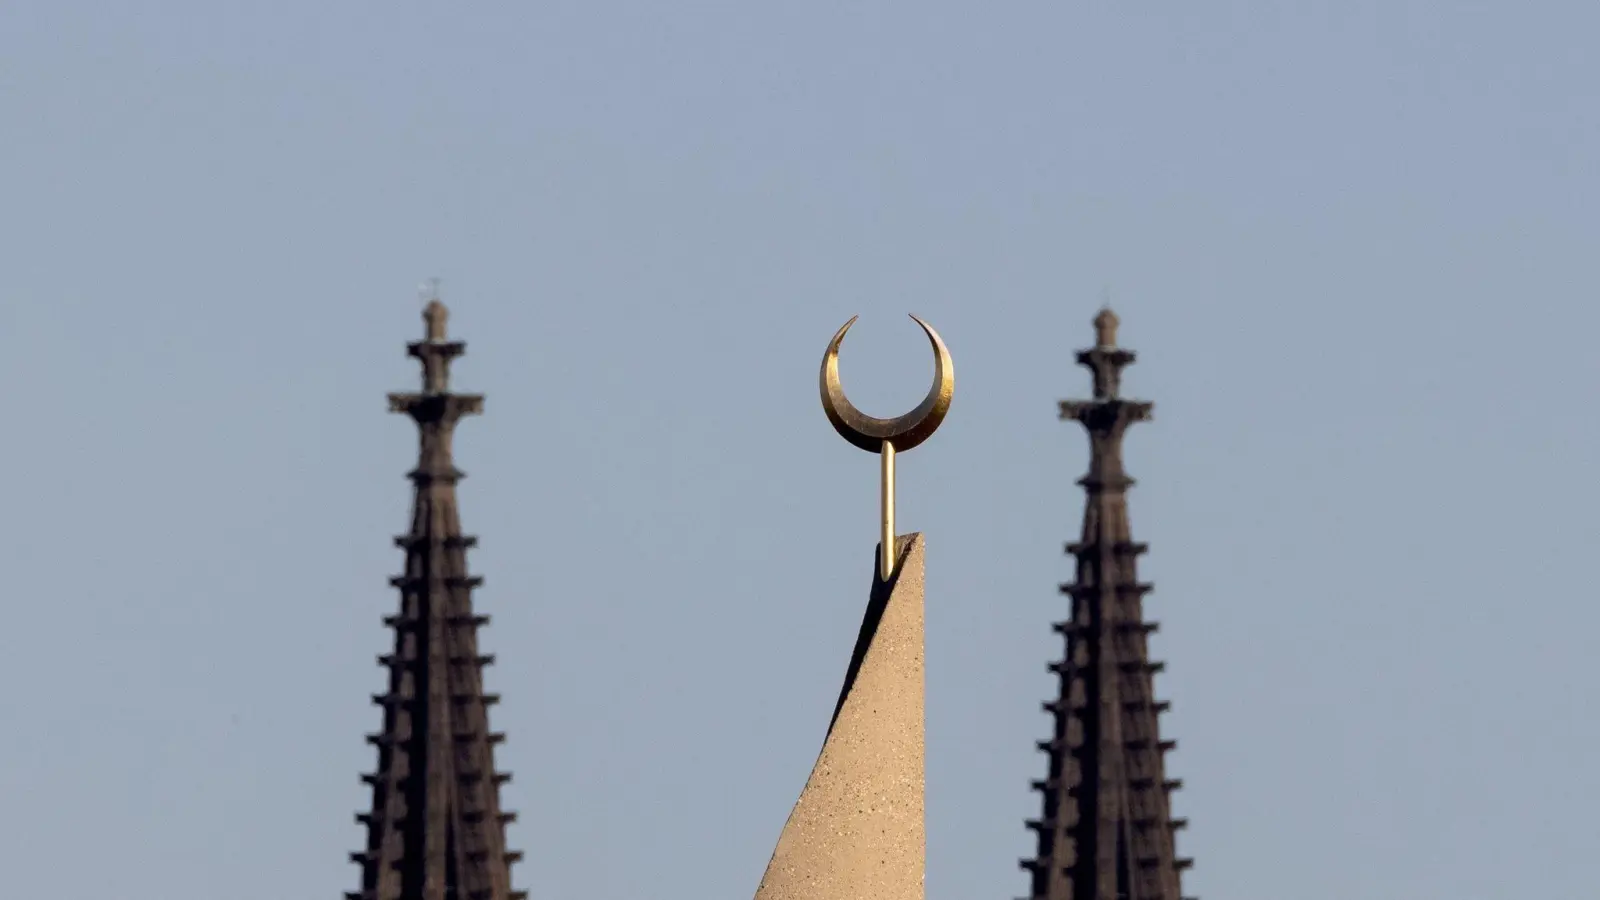 Der Halbmond auf einer Moschee ist zwischen den Türmen des Kölner Doms zu sehen. Der Auftritt eines hochrangigen afghanischen Taliban-Funktionärs in einer Kölner Moschee löst harsche Kritik aus. (Foto: Rolf Vennenbernd/dpa)